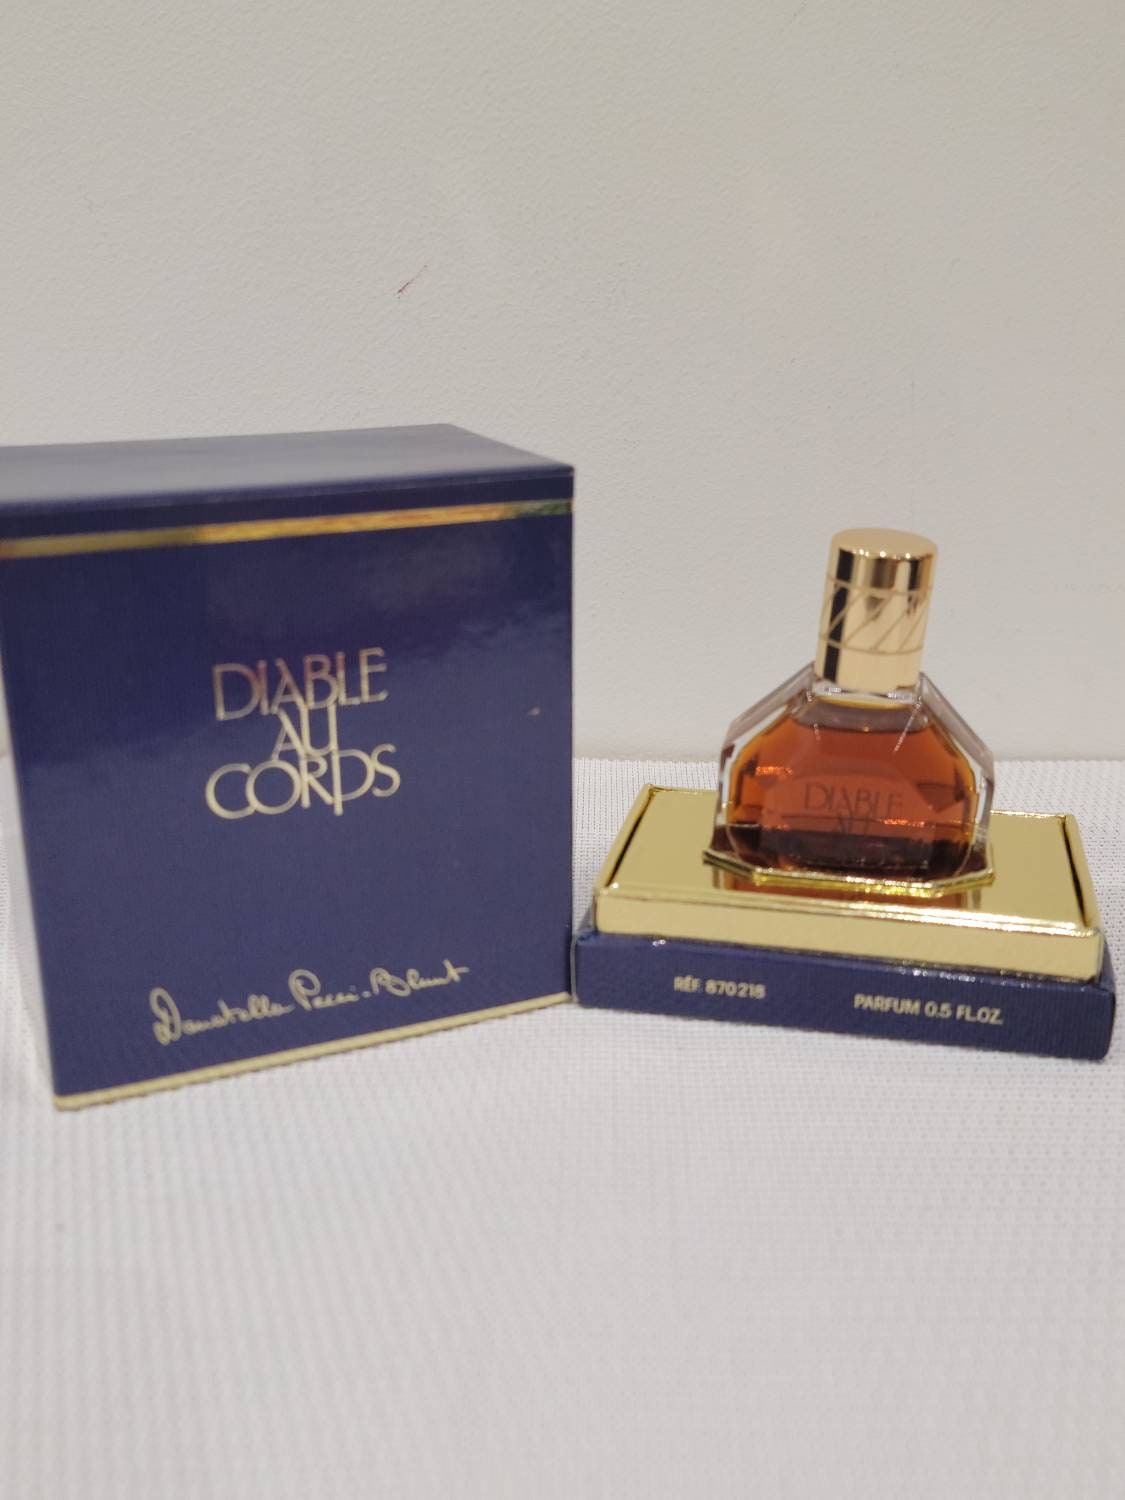 Donatella Pecci Blunt Dans Le Vent Pour lui Eau de Toilette Edt 30ml 1 Fl.  Oz. Spray Perfume for Men Rare Vintage 1994